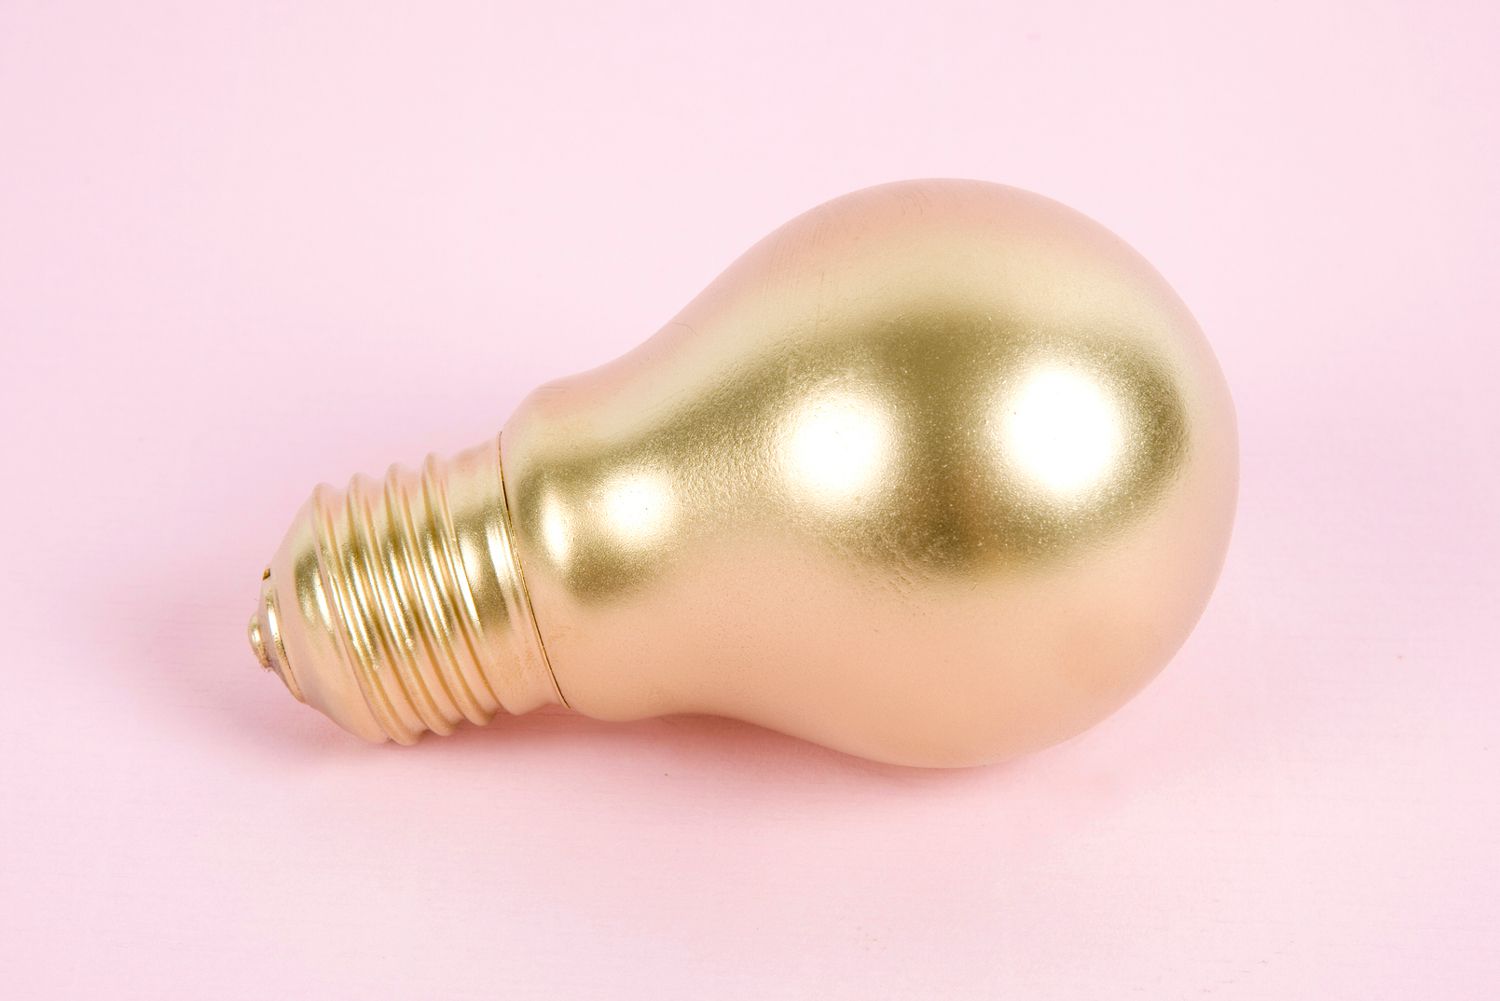 Goldfarbene Glühbirne auf einer rosafarbenen Oberfläche